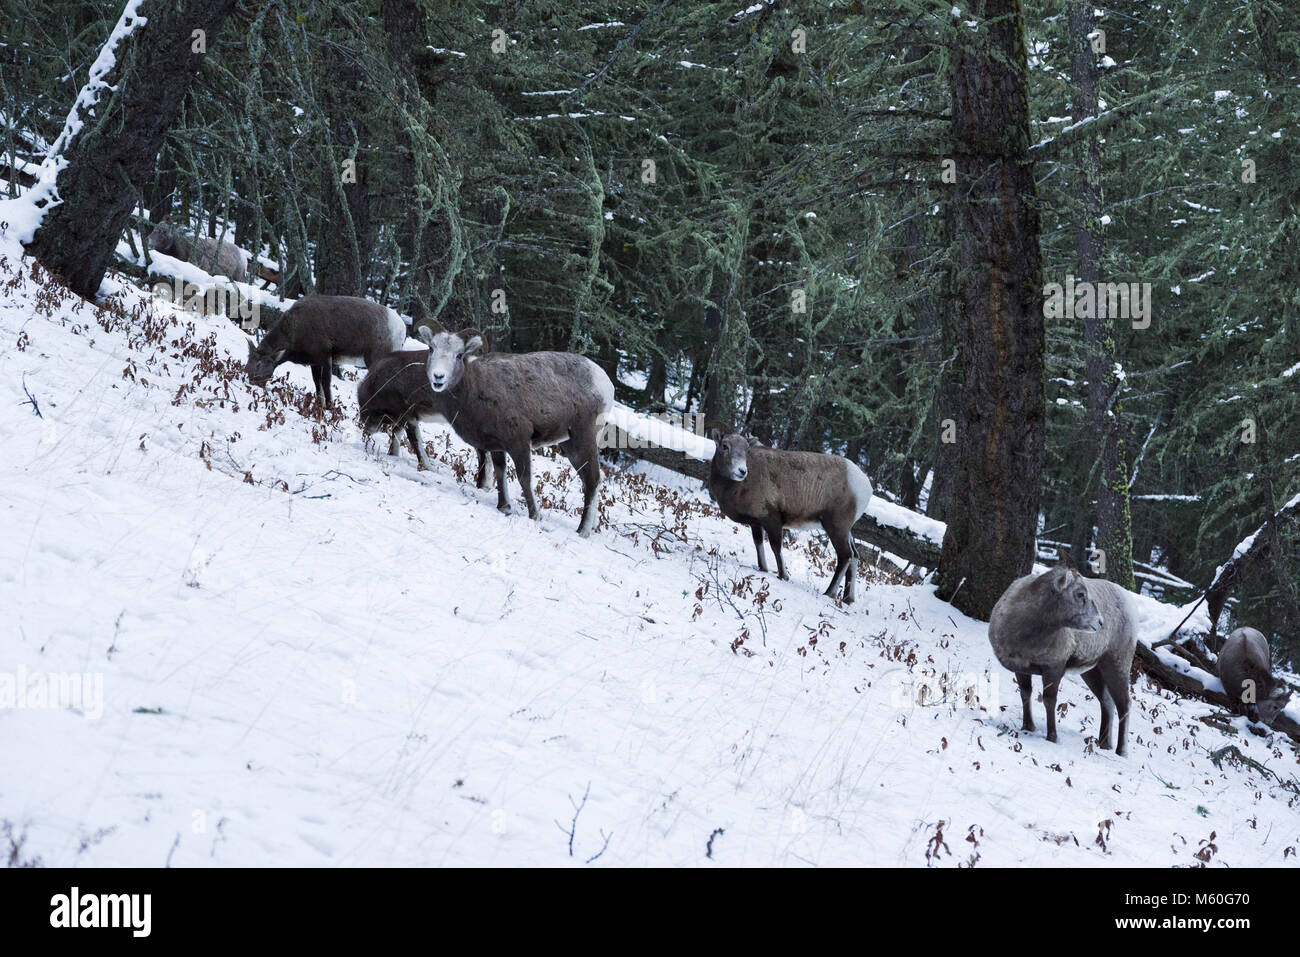 Wild Mountain sheep in the Rocky Mountains Stock Photo